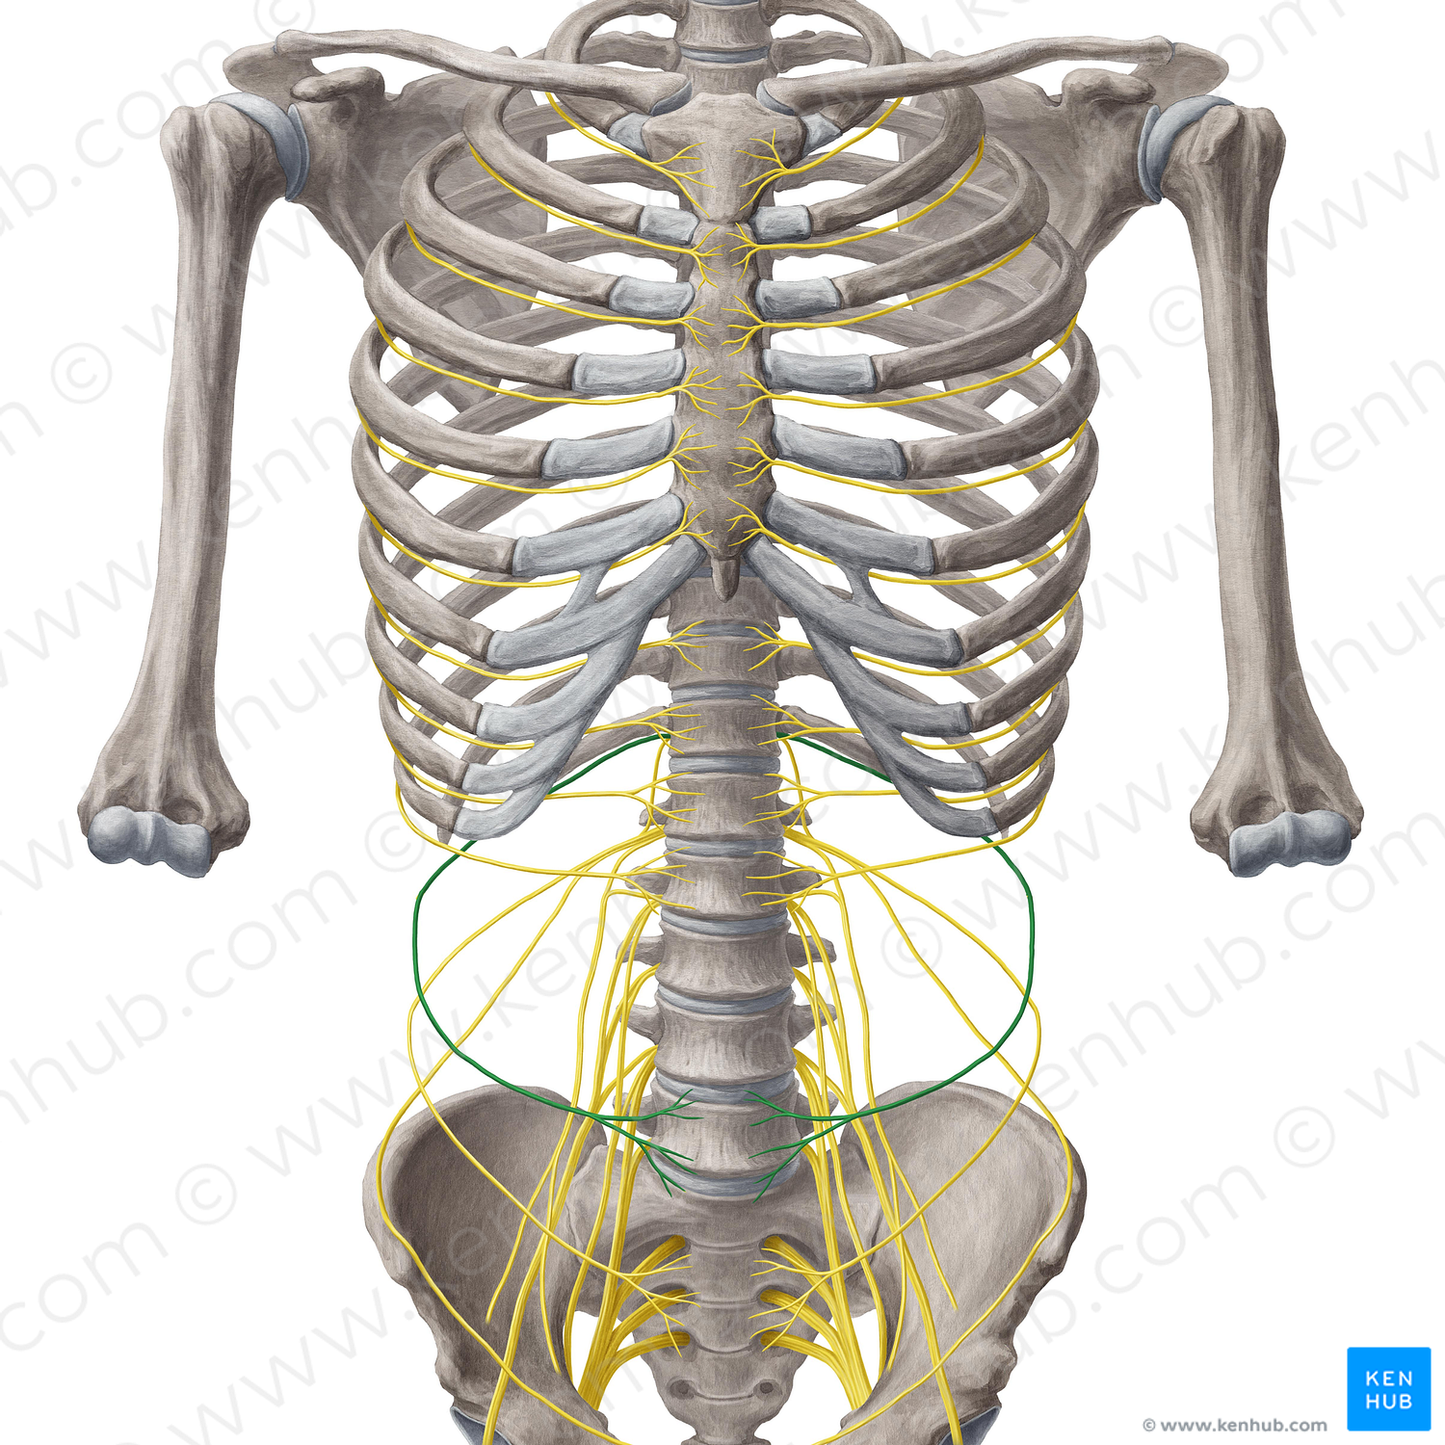 Subcostal nerve (#6774)